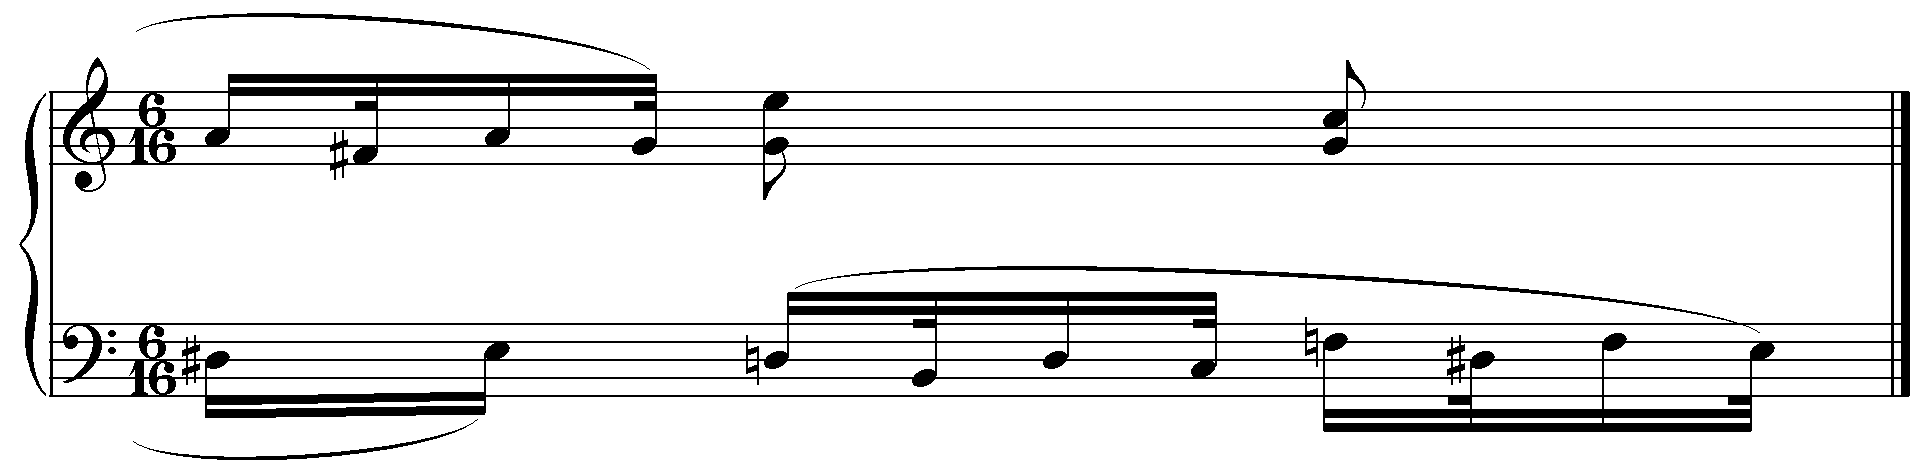 Example 3: Arietta, m. 35 (variation 2)